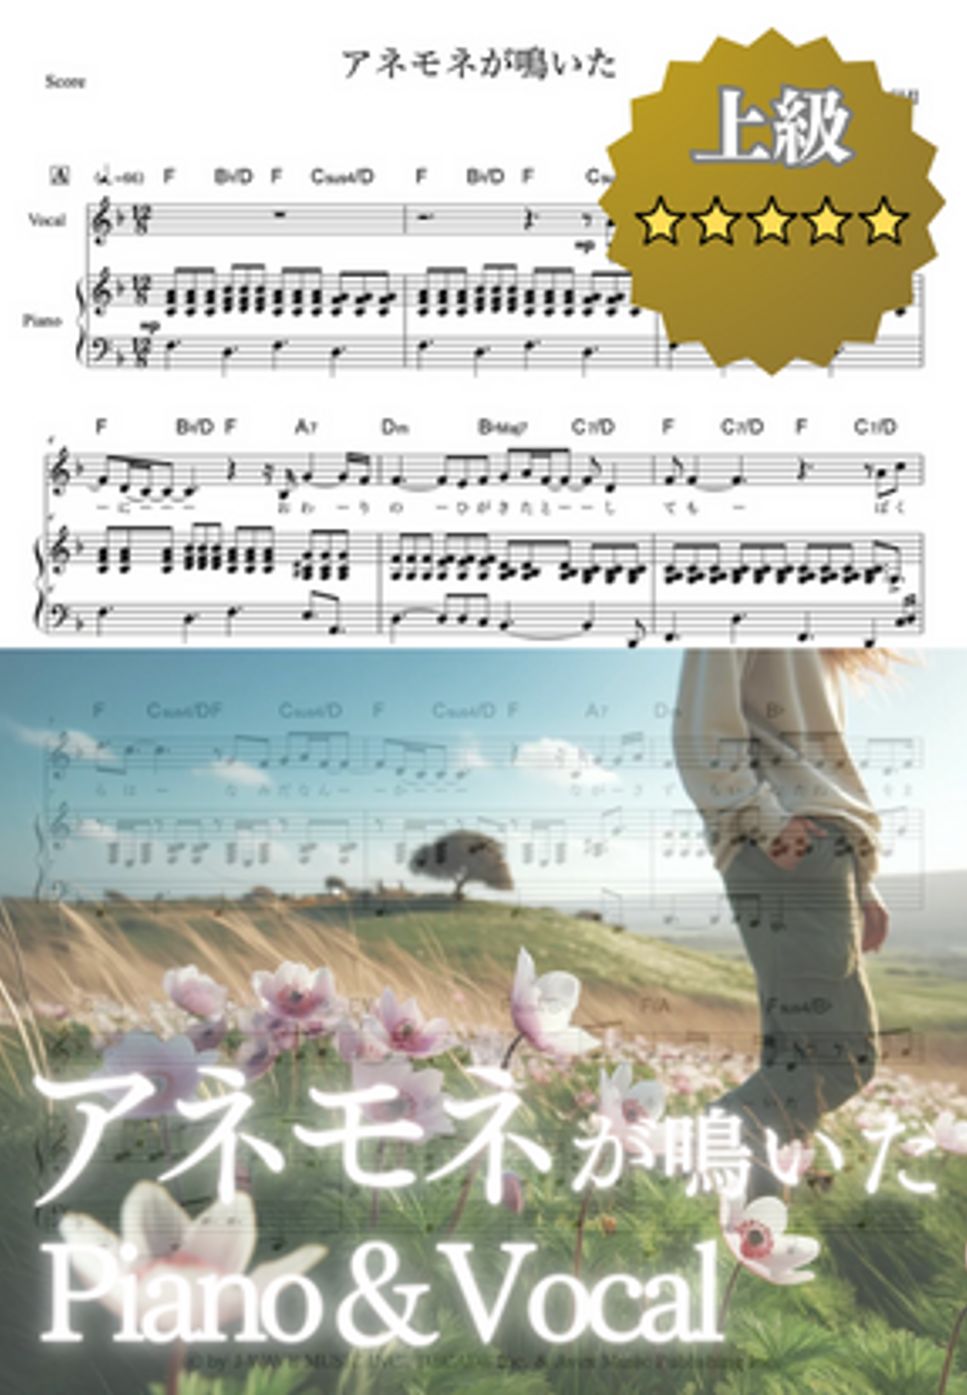 大橋トリオ - アネモネが鳴いた (ピアノ弾き語り) by cogito